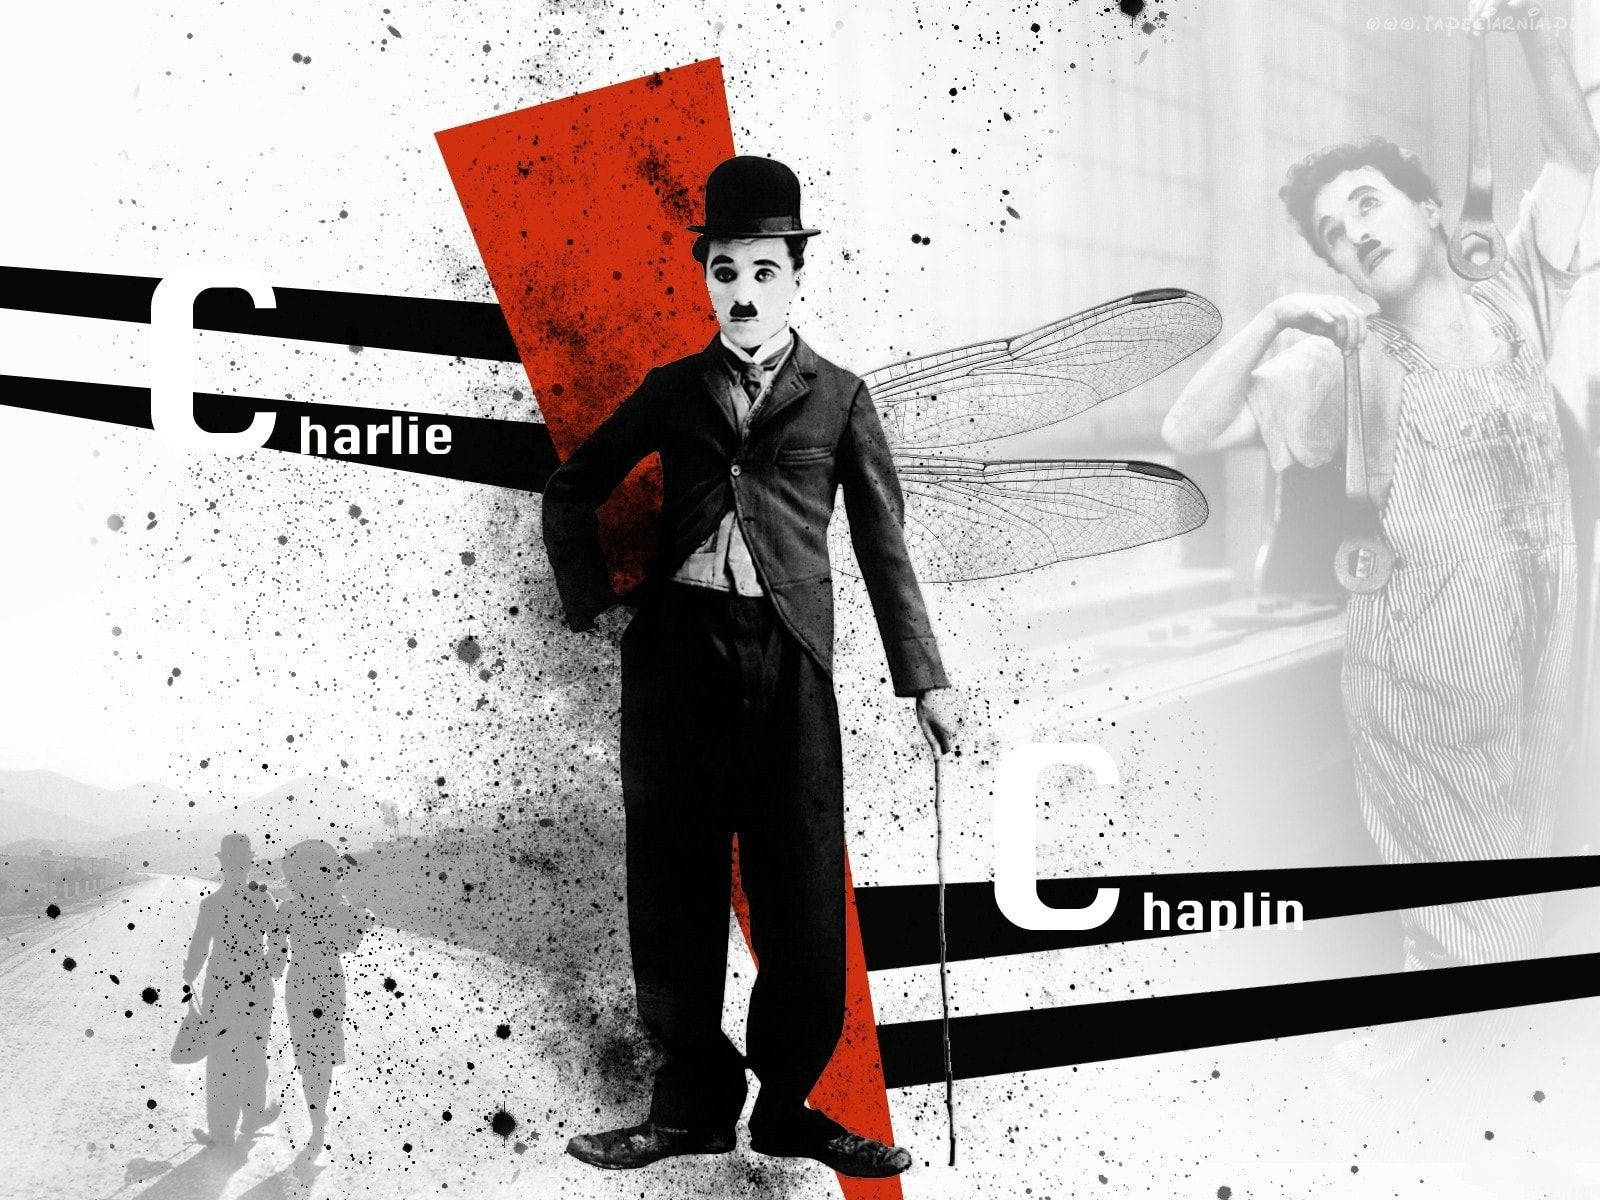 Charlie Chaplin Digital Art Wallpaper